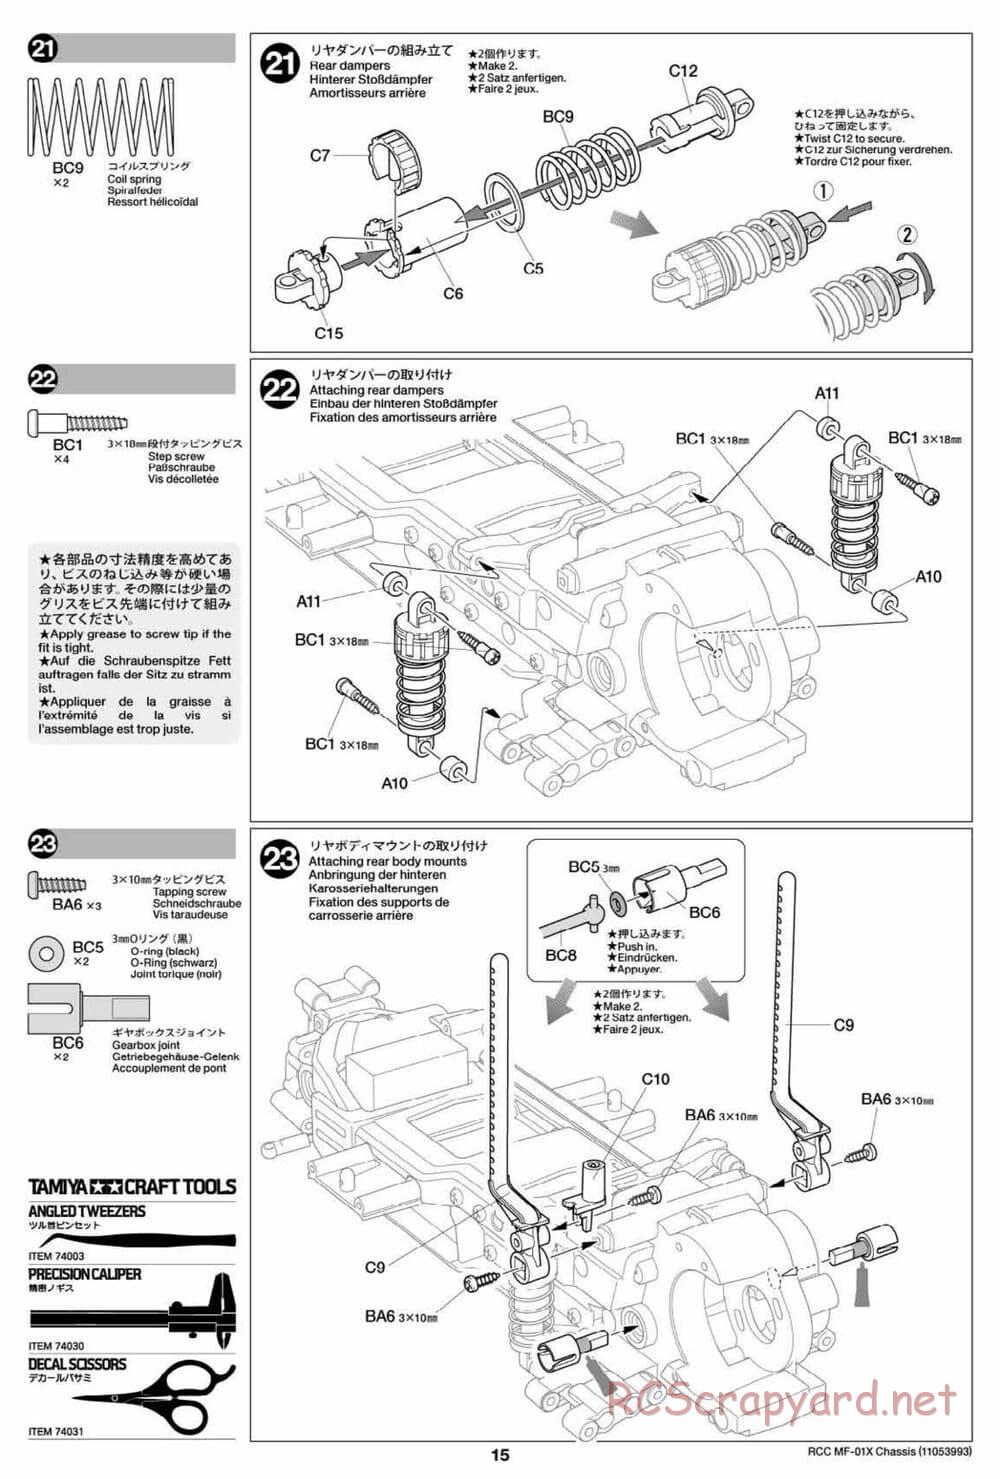 Tamiya - MF-01X Chassis - Manual - Page 15